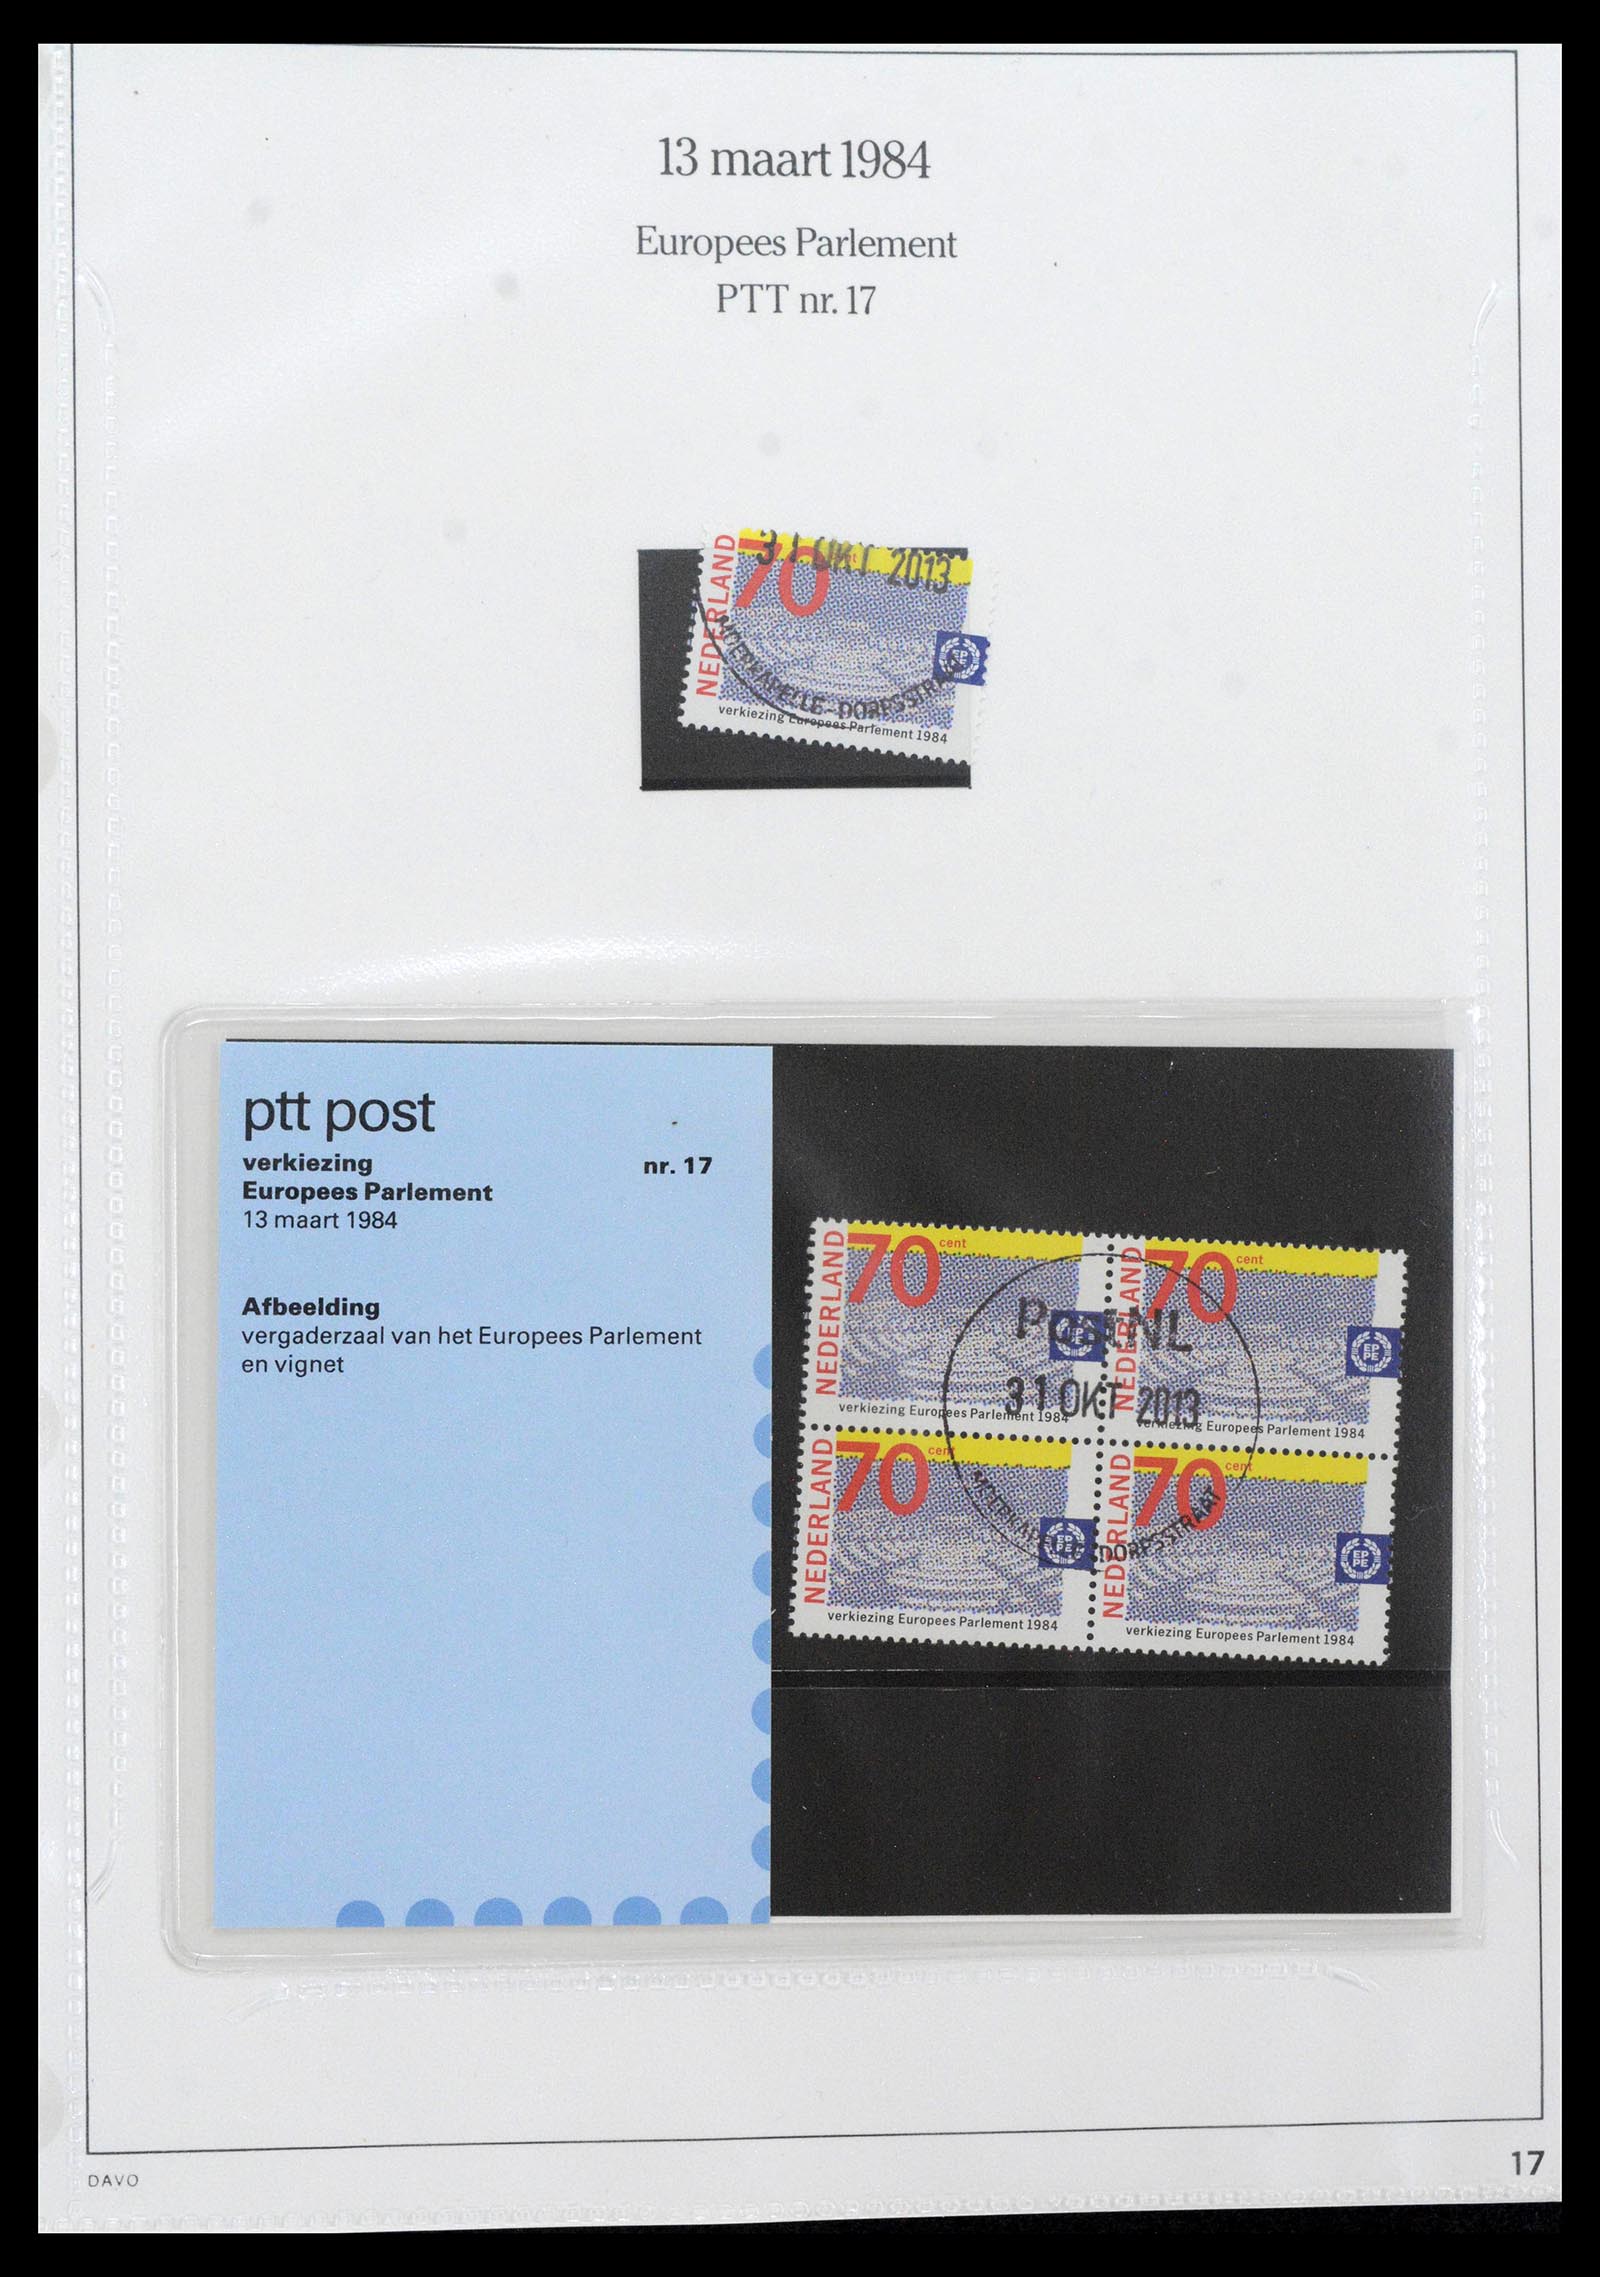 39121 0017 - Stamp collection 39121 Netherlands presentationpacks 1982-2001.